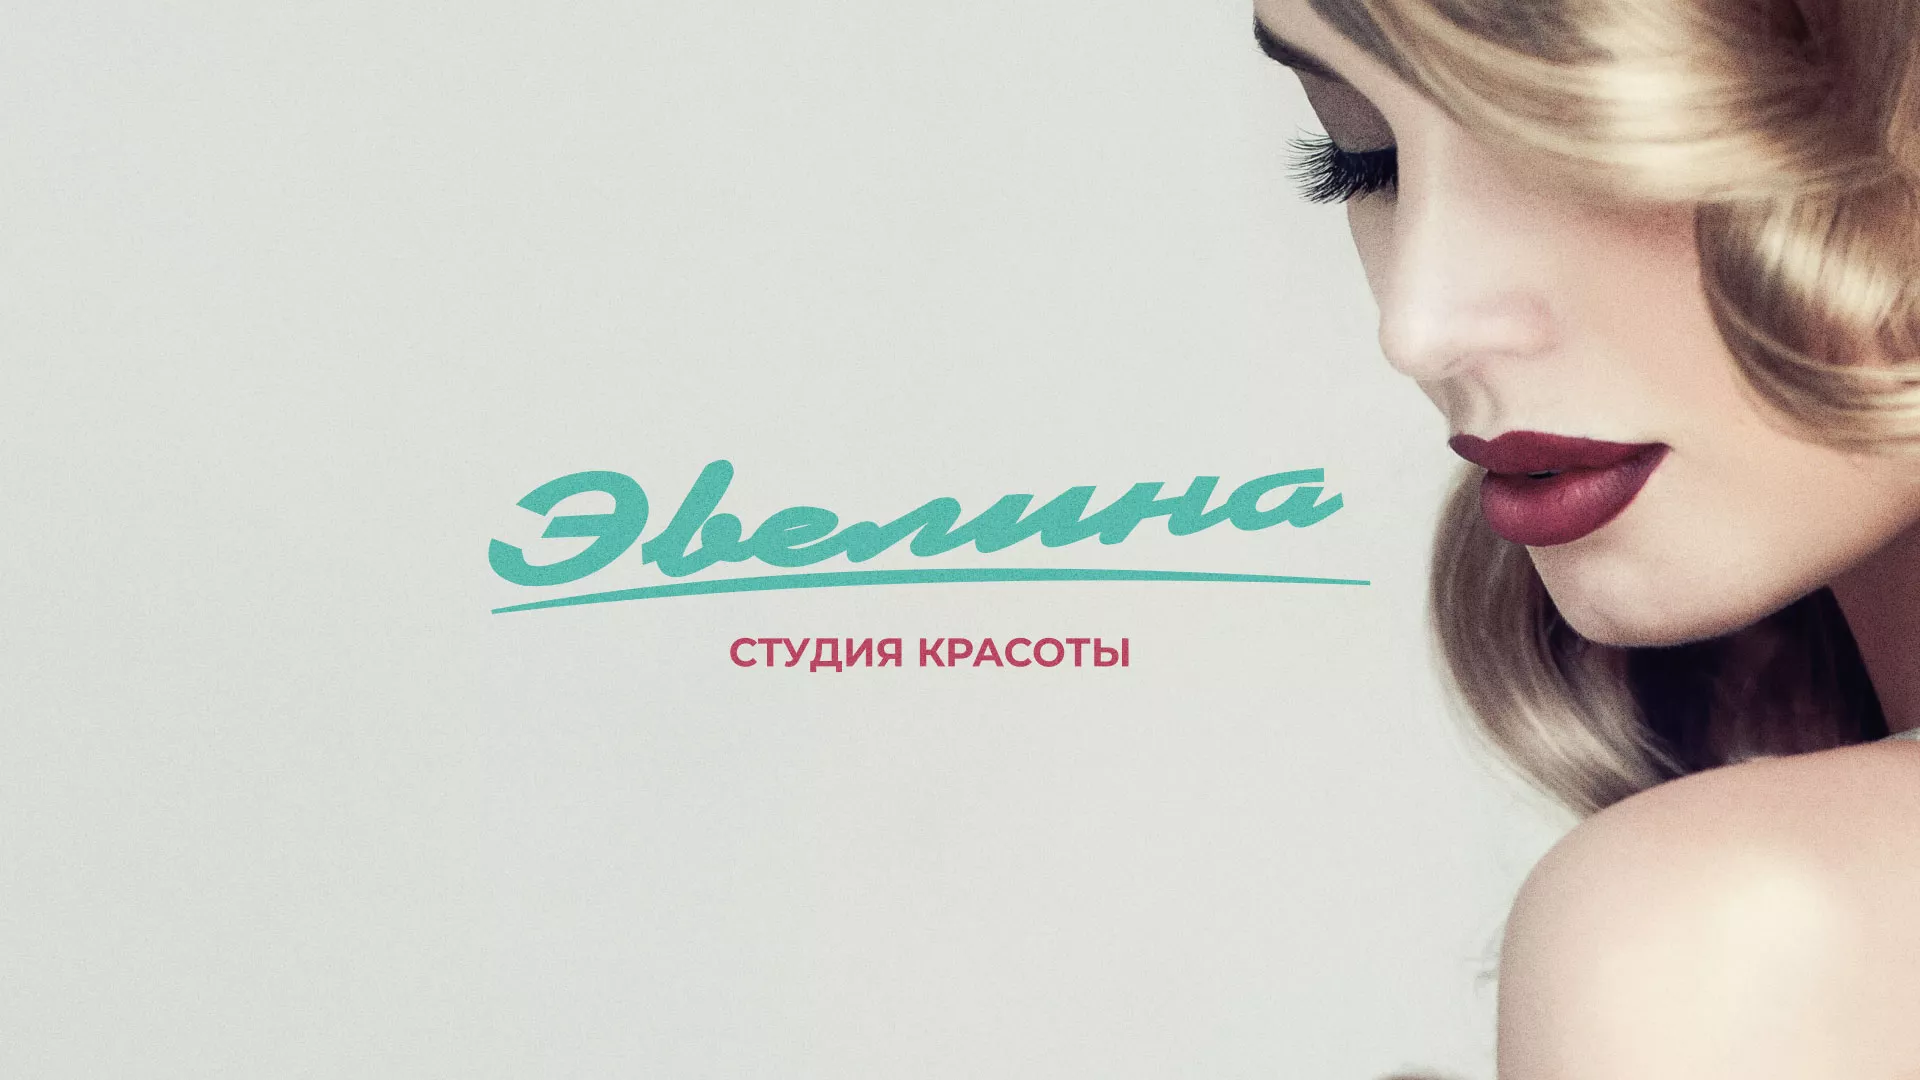 Разработка сайта для салона красоты «Эвелина» в Обнинске